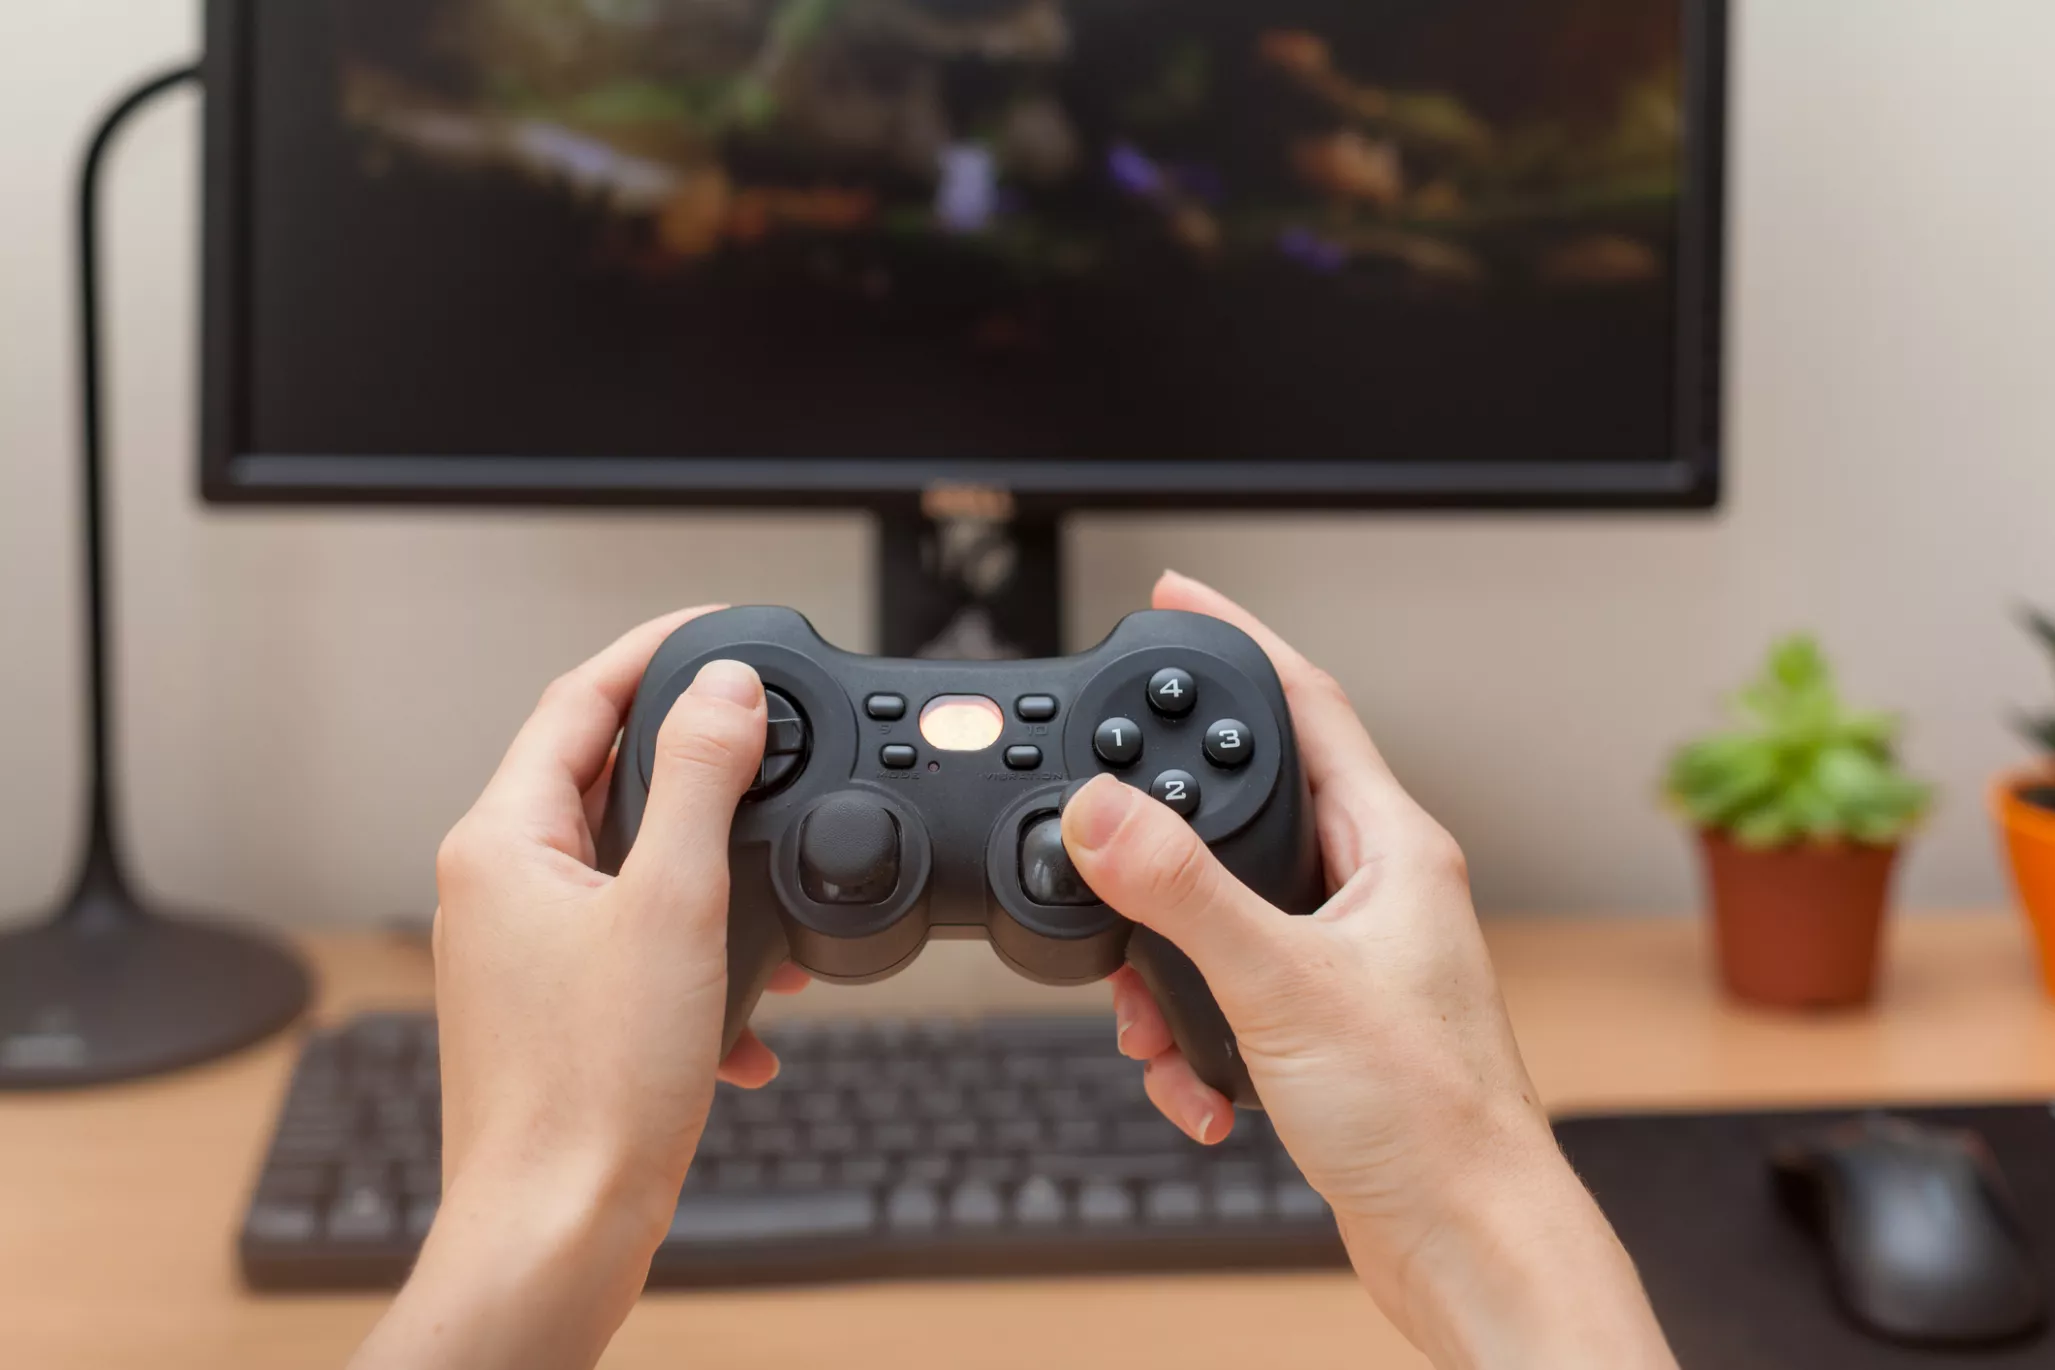 Канада прагне посилити контроль за іноземними інвестиціями у сферу відеоігор та віртуальної реальності